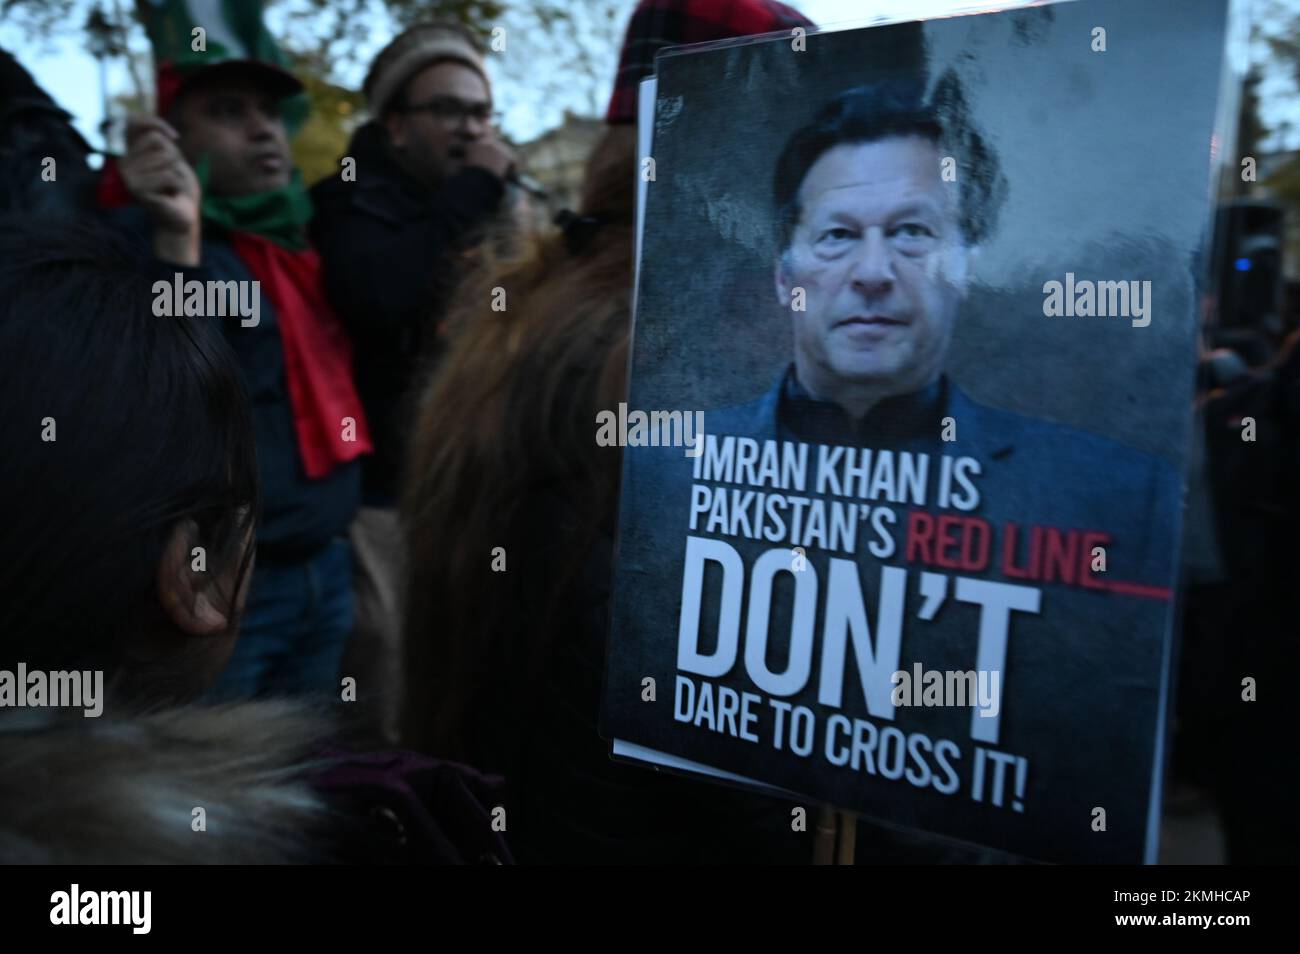 Downing Street, London, Großbritannien. 26.. November 2022: PTI protestiert gegen die Mafia, die vom Vereinigten Königreich importiert wurde. Internationaler Dreckskerl, der den Führer Pakistani Imran Khan in Pakistan vertrieben hat. Stockfoto